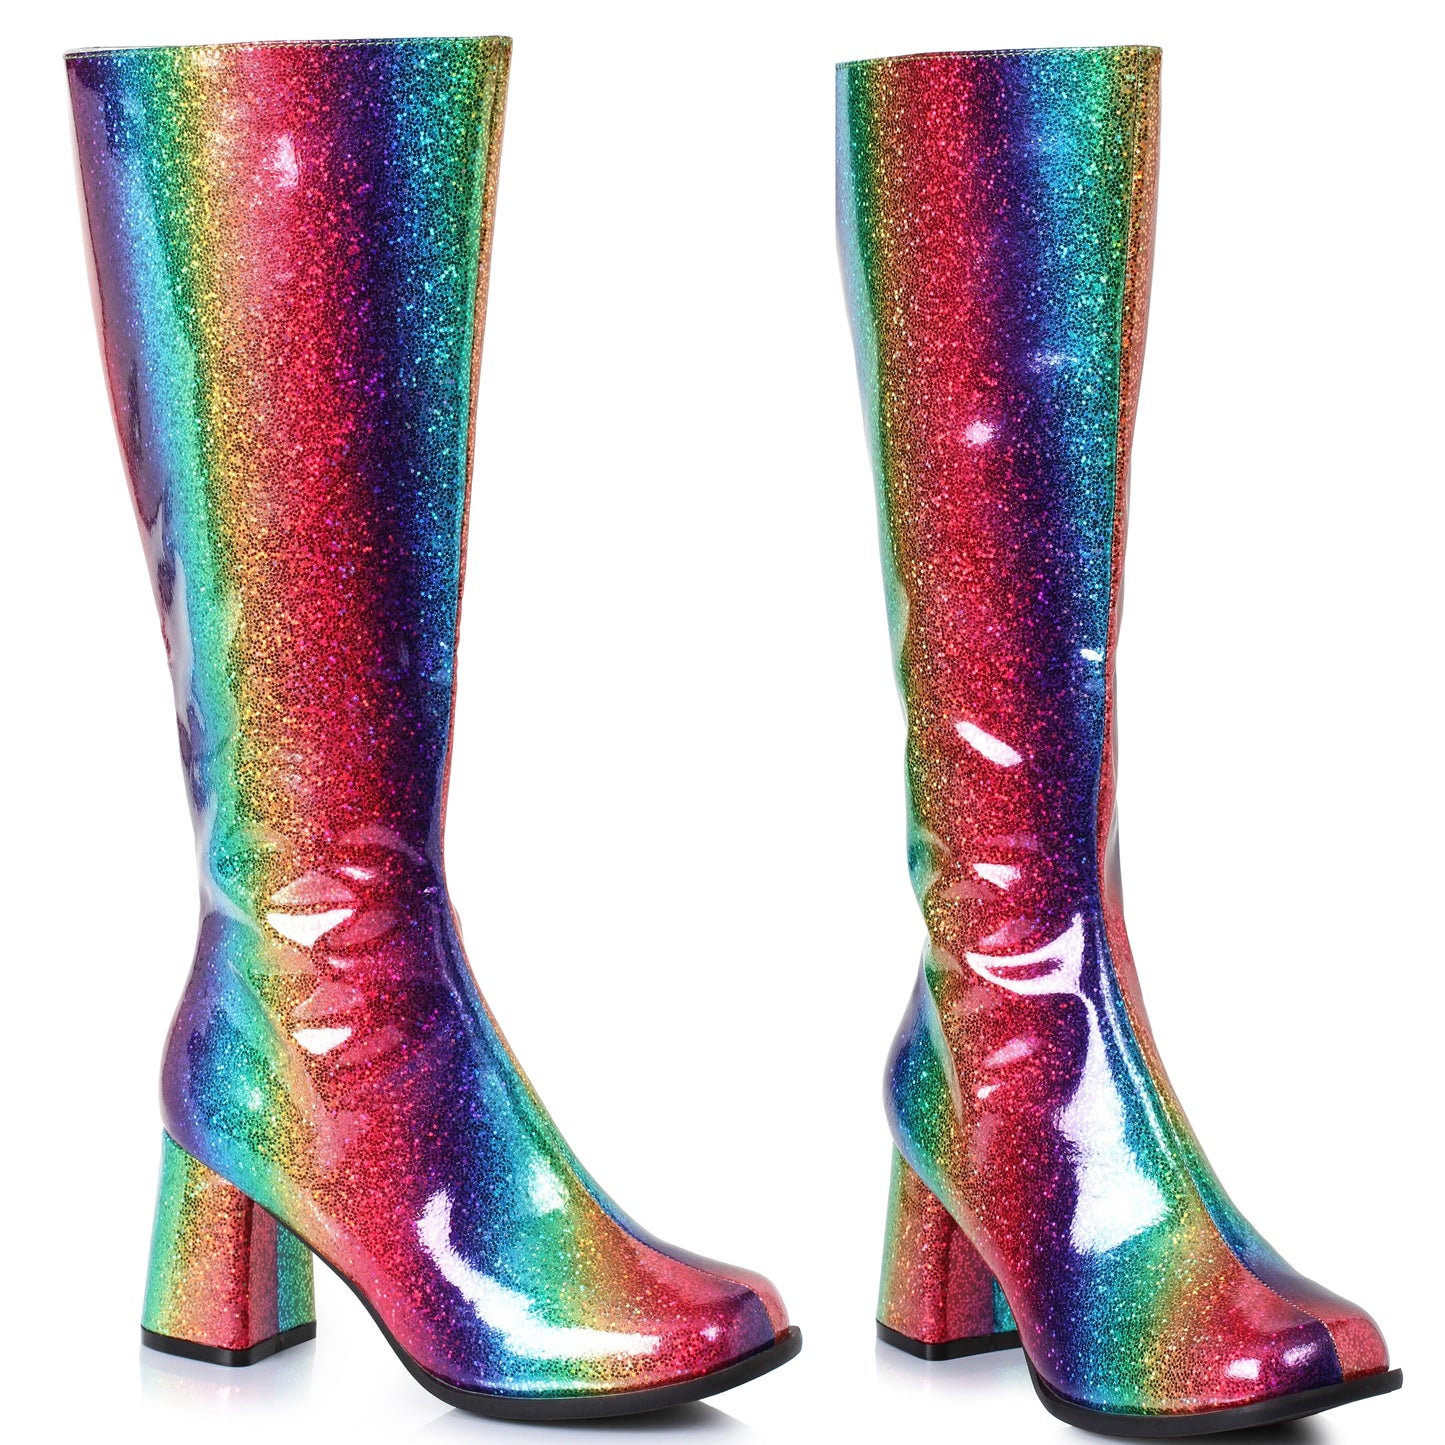 300-SUMMER 3" Knee High Rainbow Boots W/Zipper